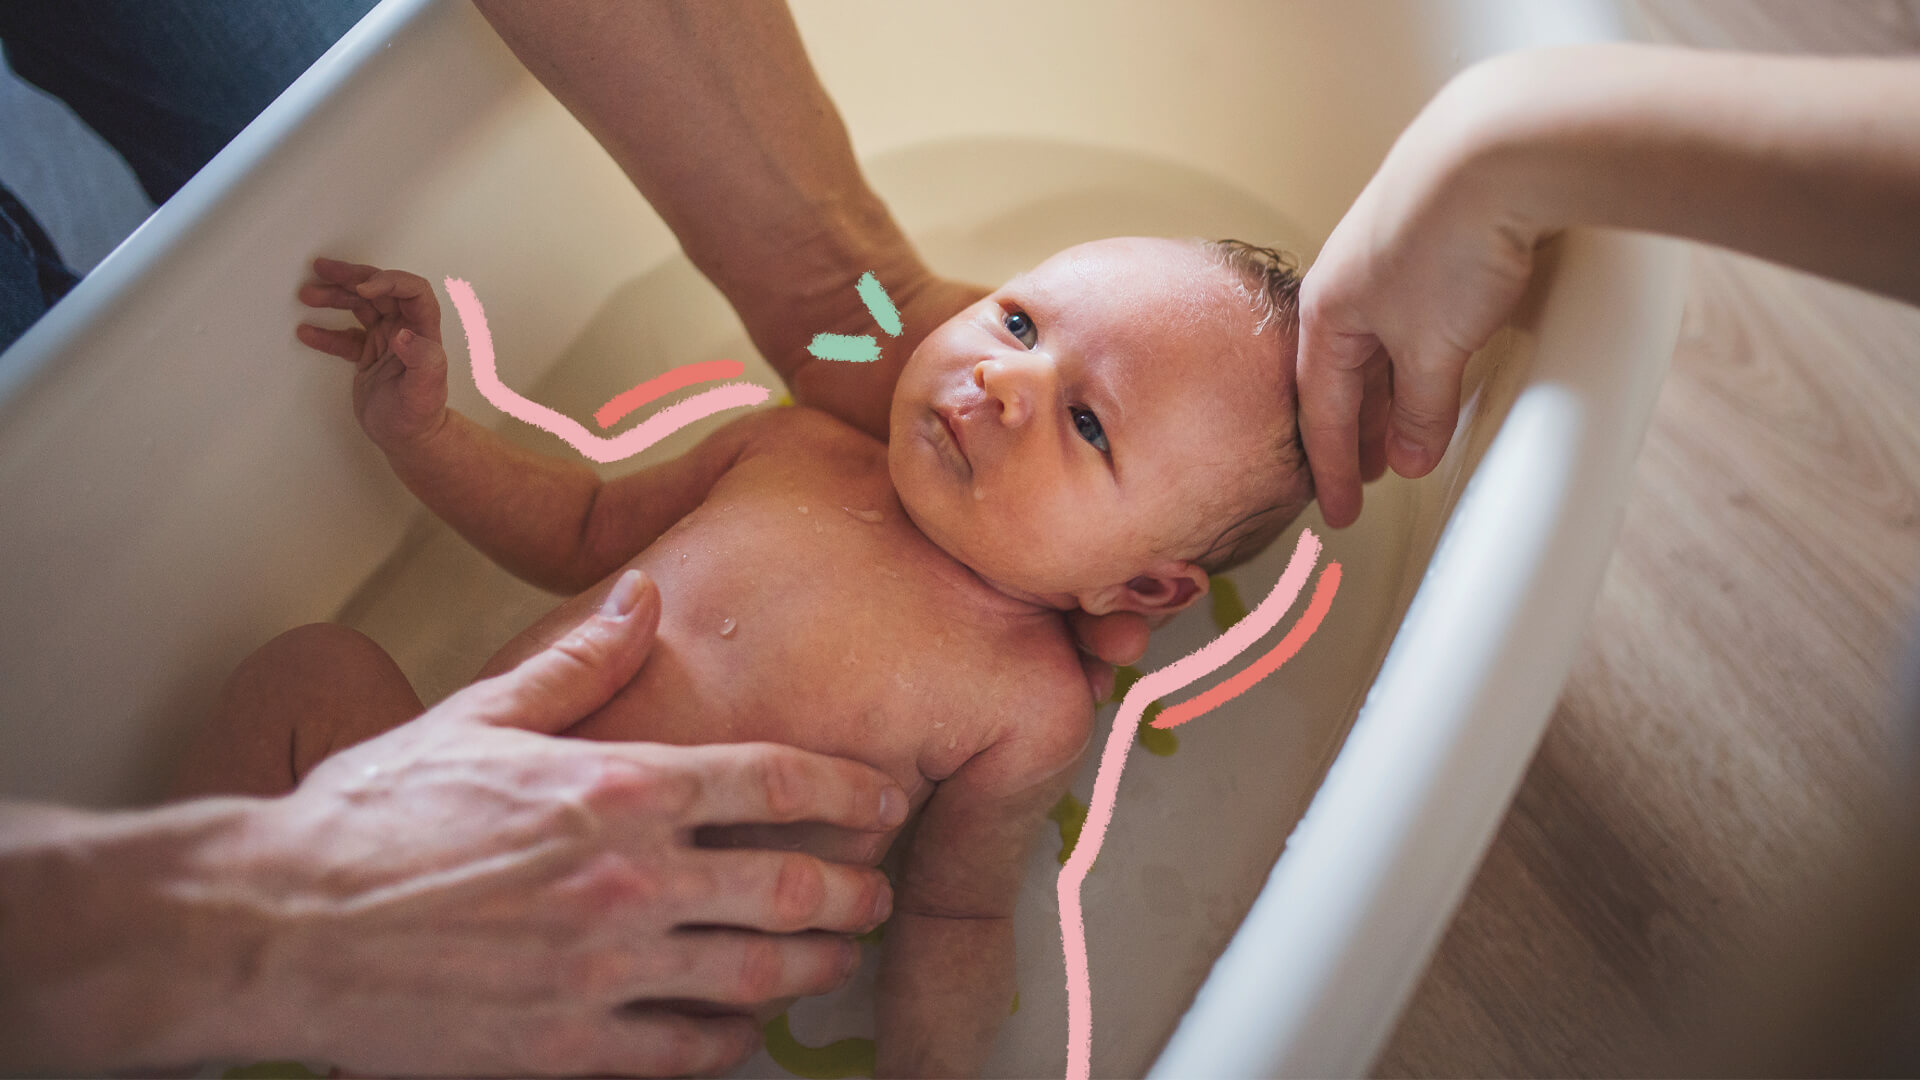 Na imagem um bebê é colocado, de costas, em uma banheira com água.